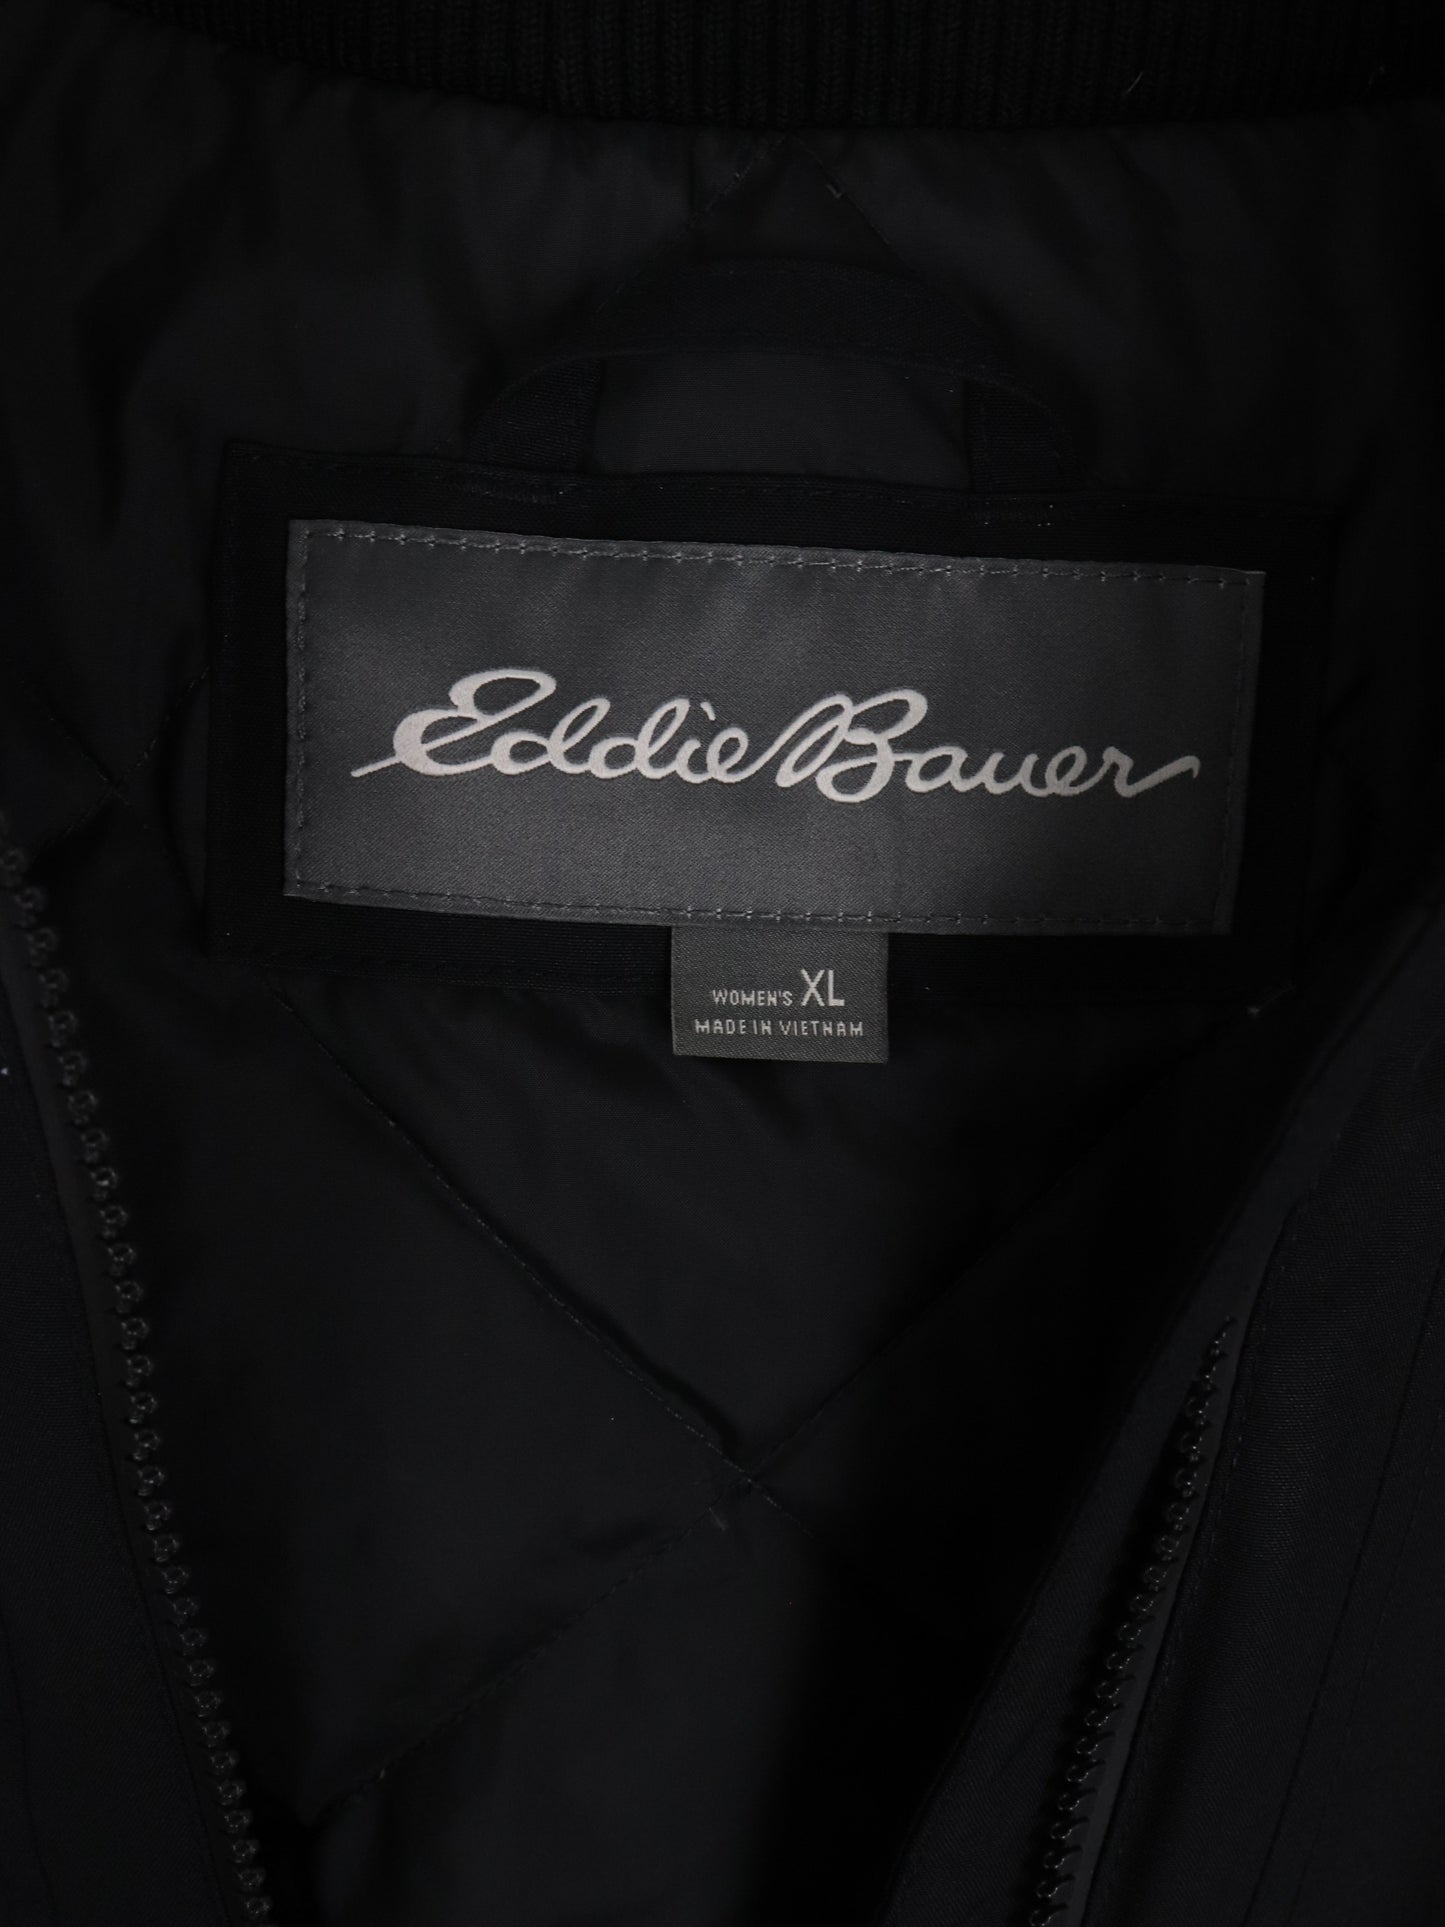 Eddie Bauer Jacket Womens XL Black Weatheredge Rain Coat Outdoors Down Coat